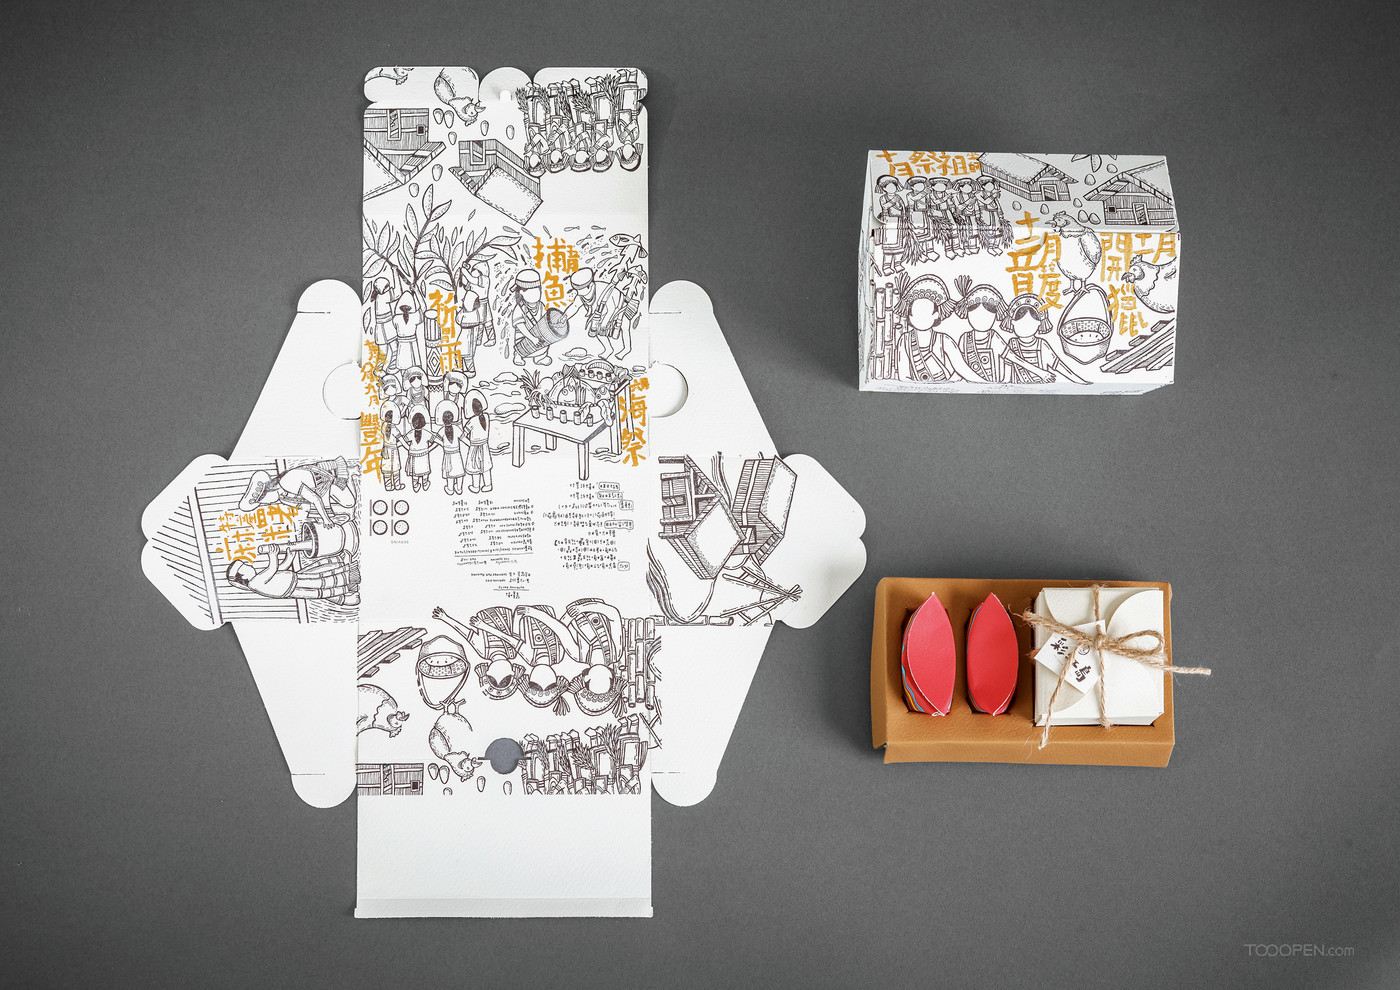 彩虹岛国创少数民族手绘文创大米特产礼品包装设计欣赏-04